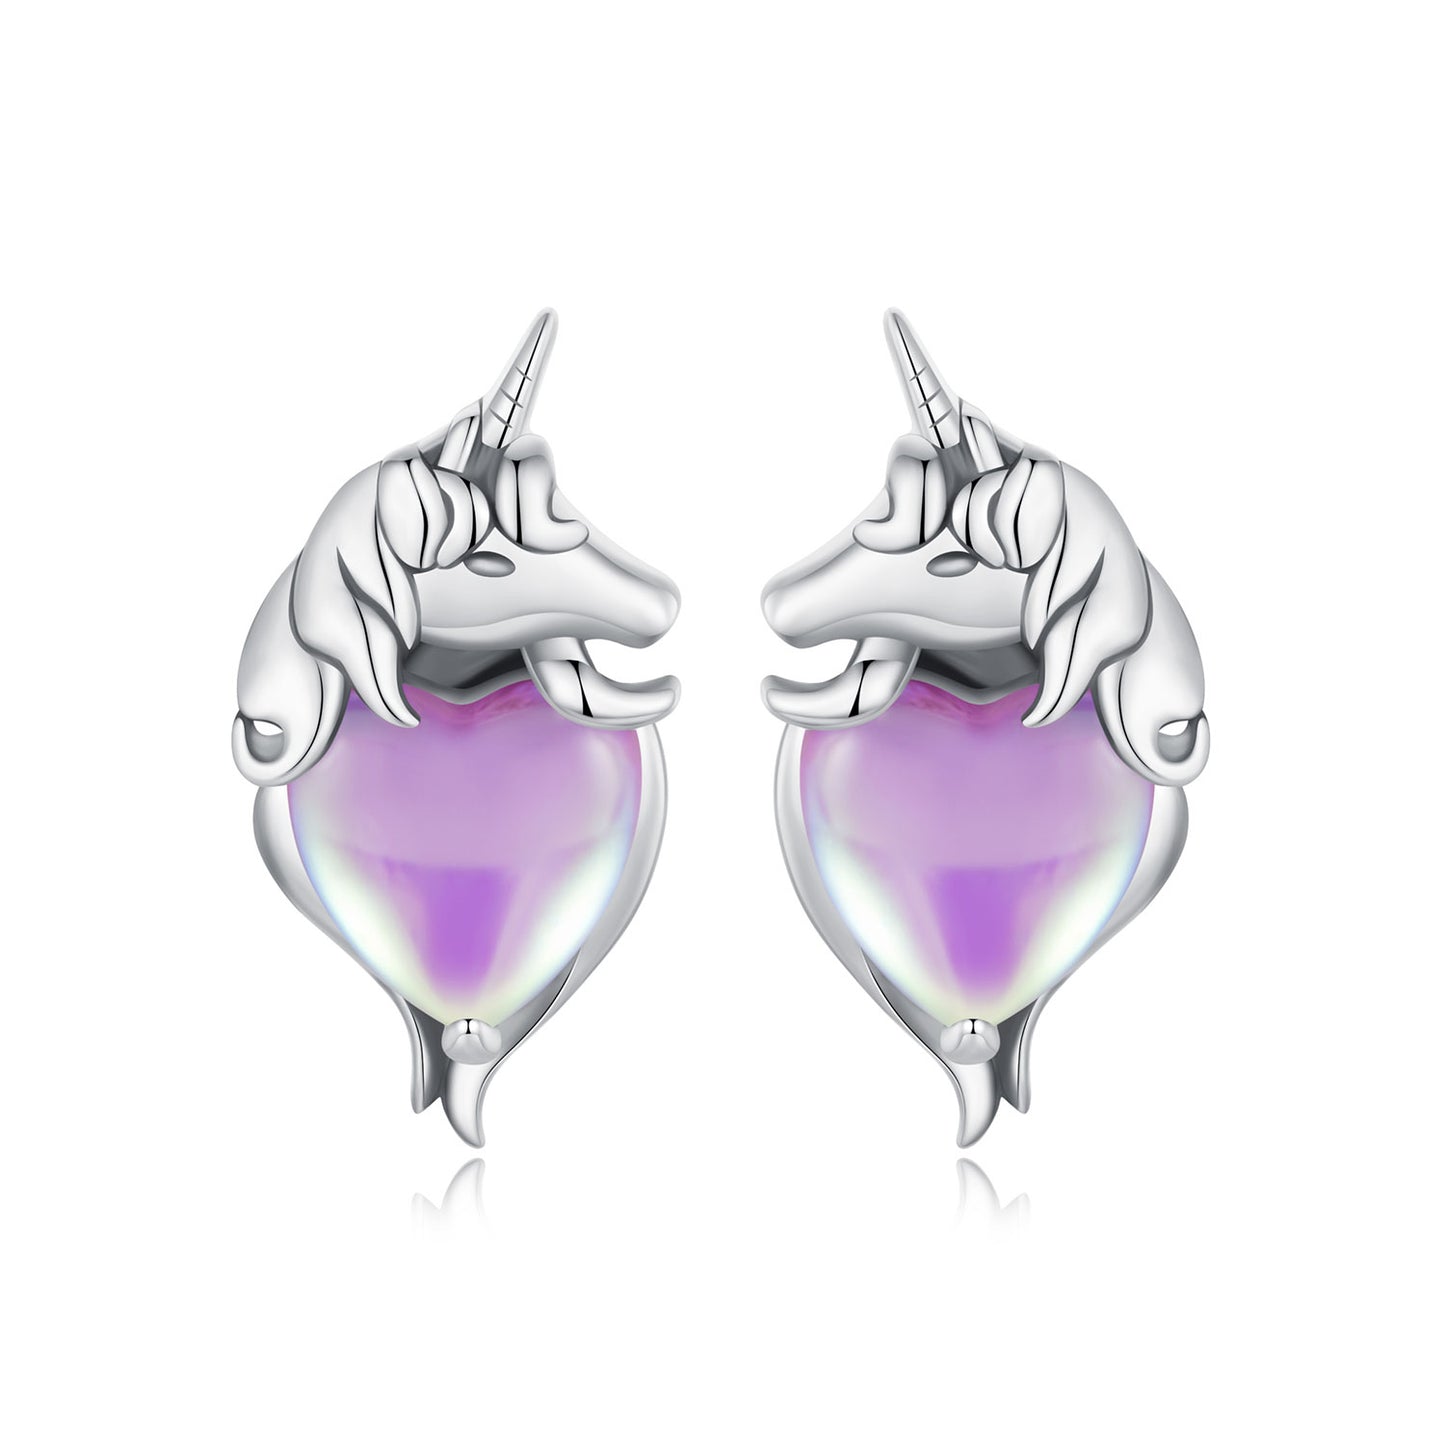 Unicorn earrings, 92.5% Sterling Silver, Glass ear stud